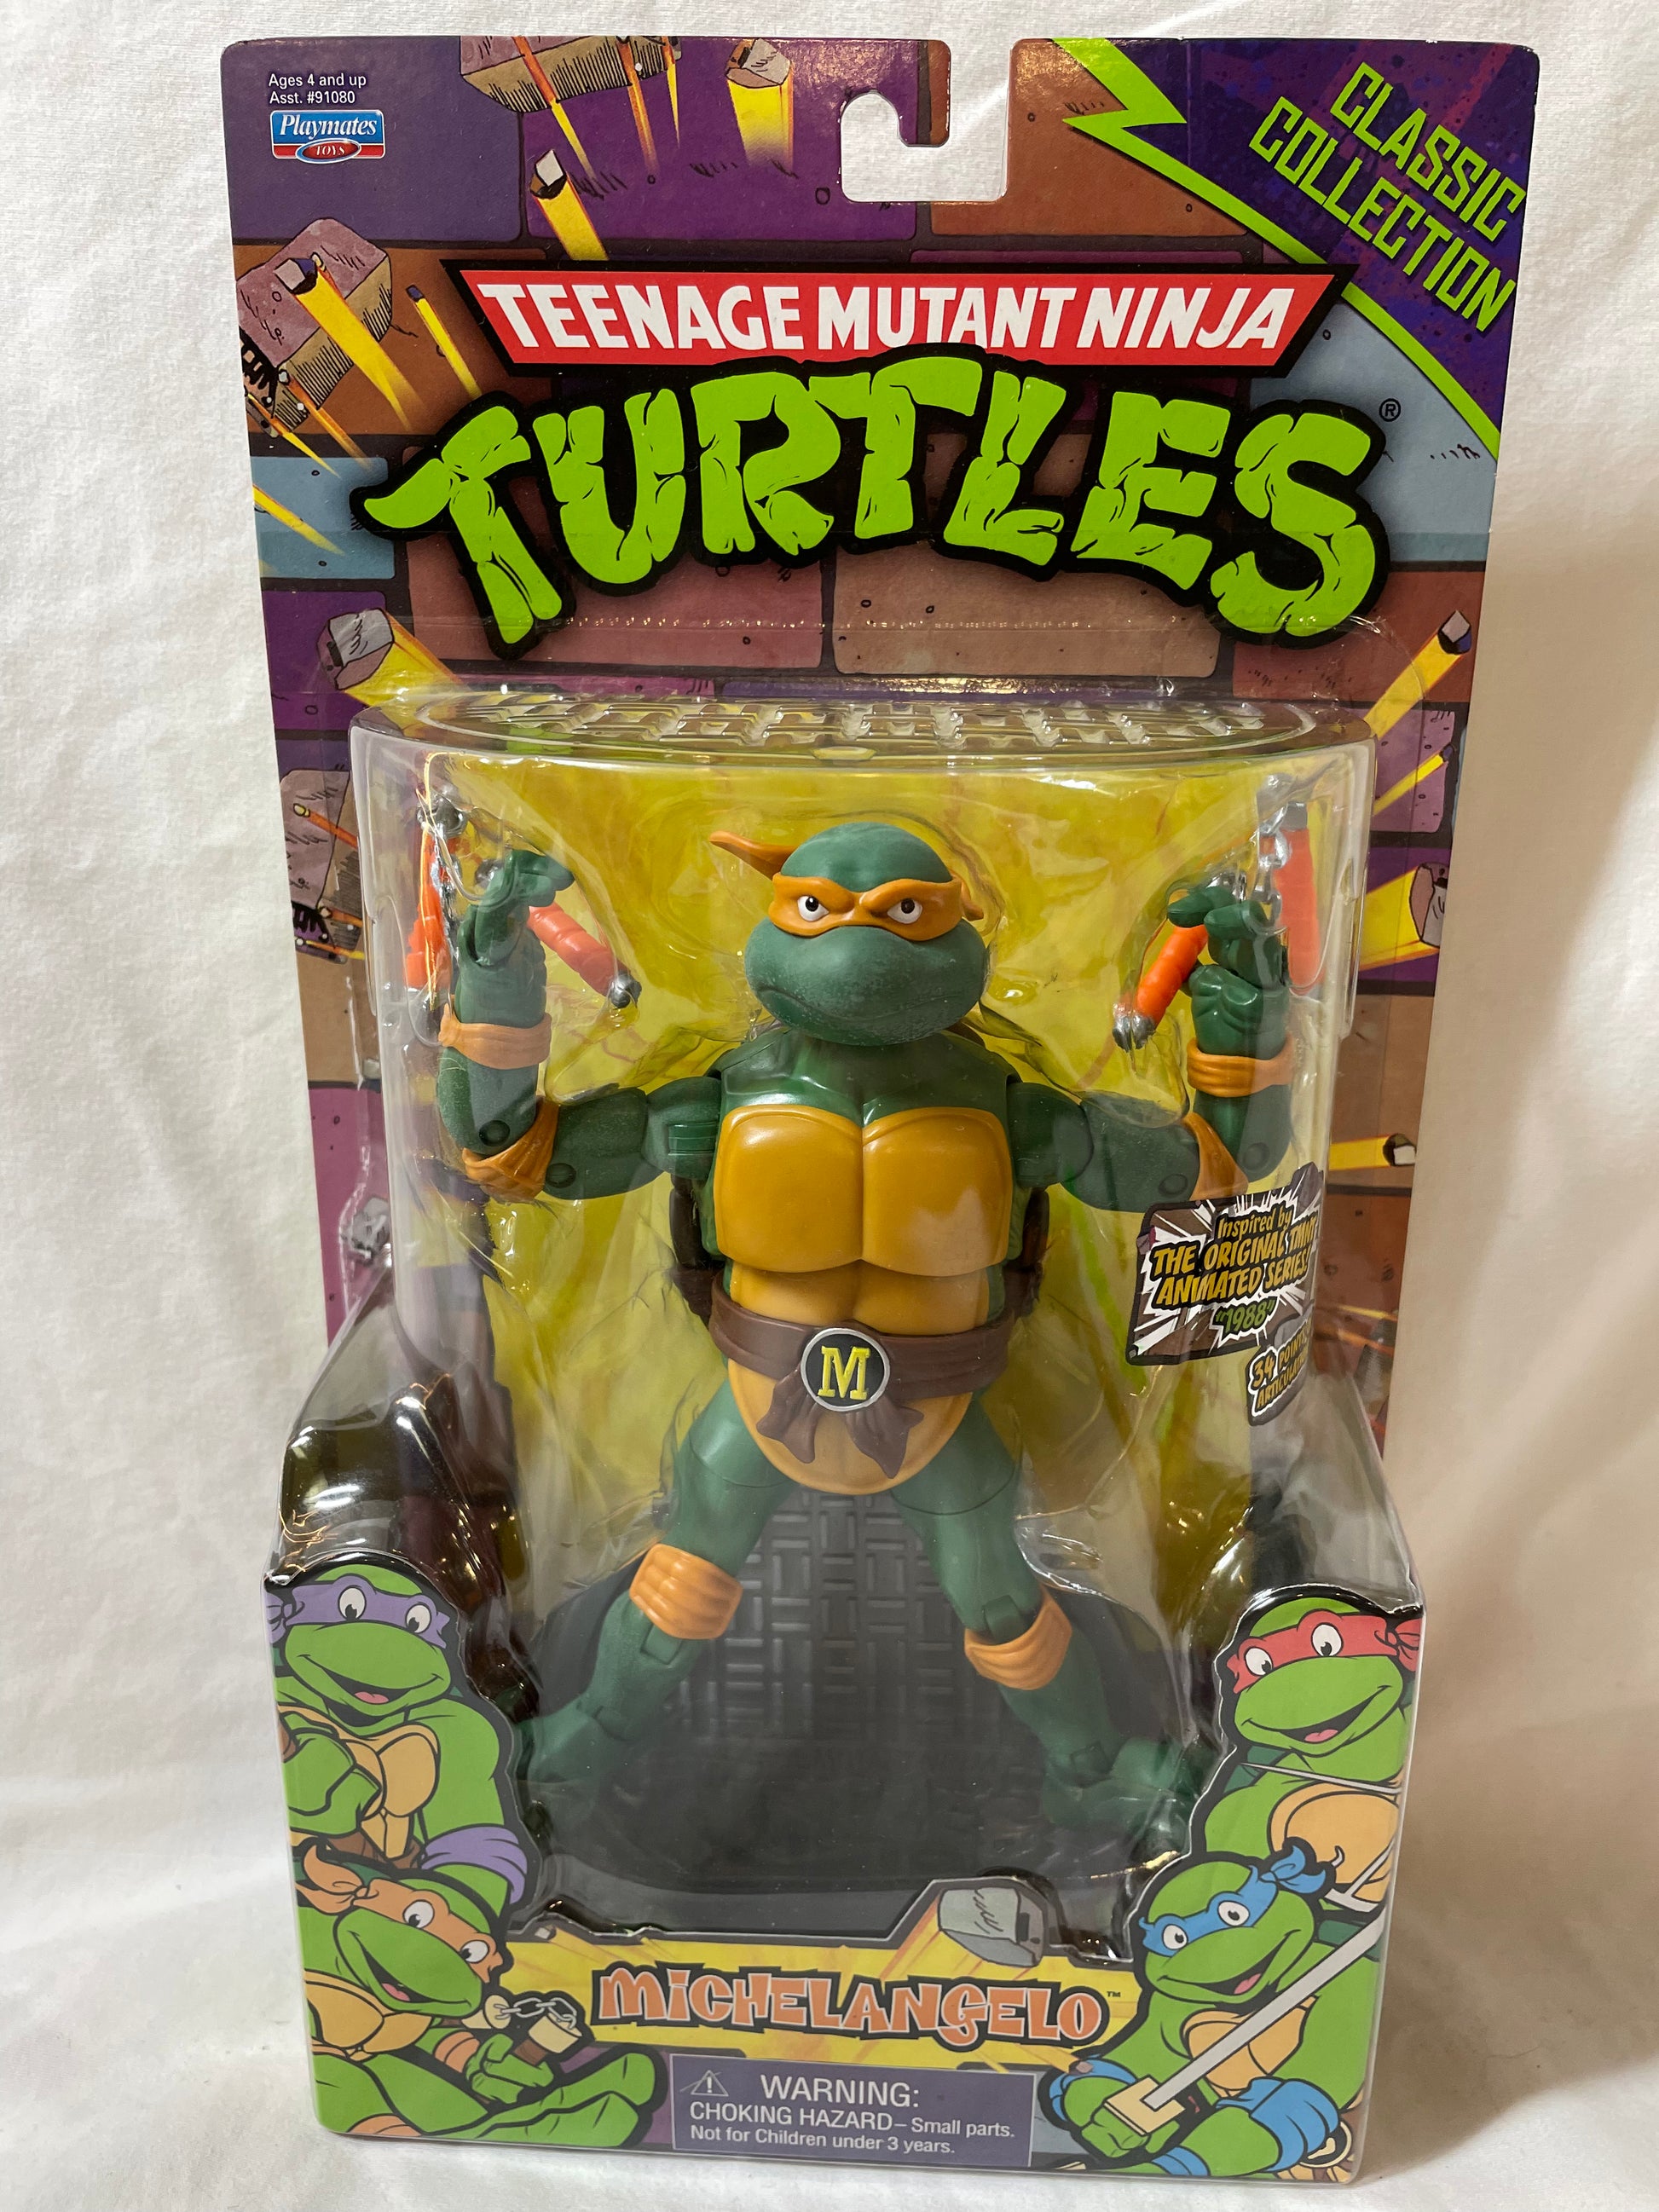 2012 Playmates TMNT Teenage Mutant Ninja Turtles Classic